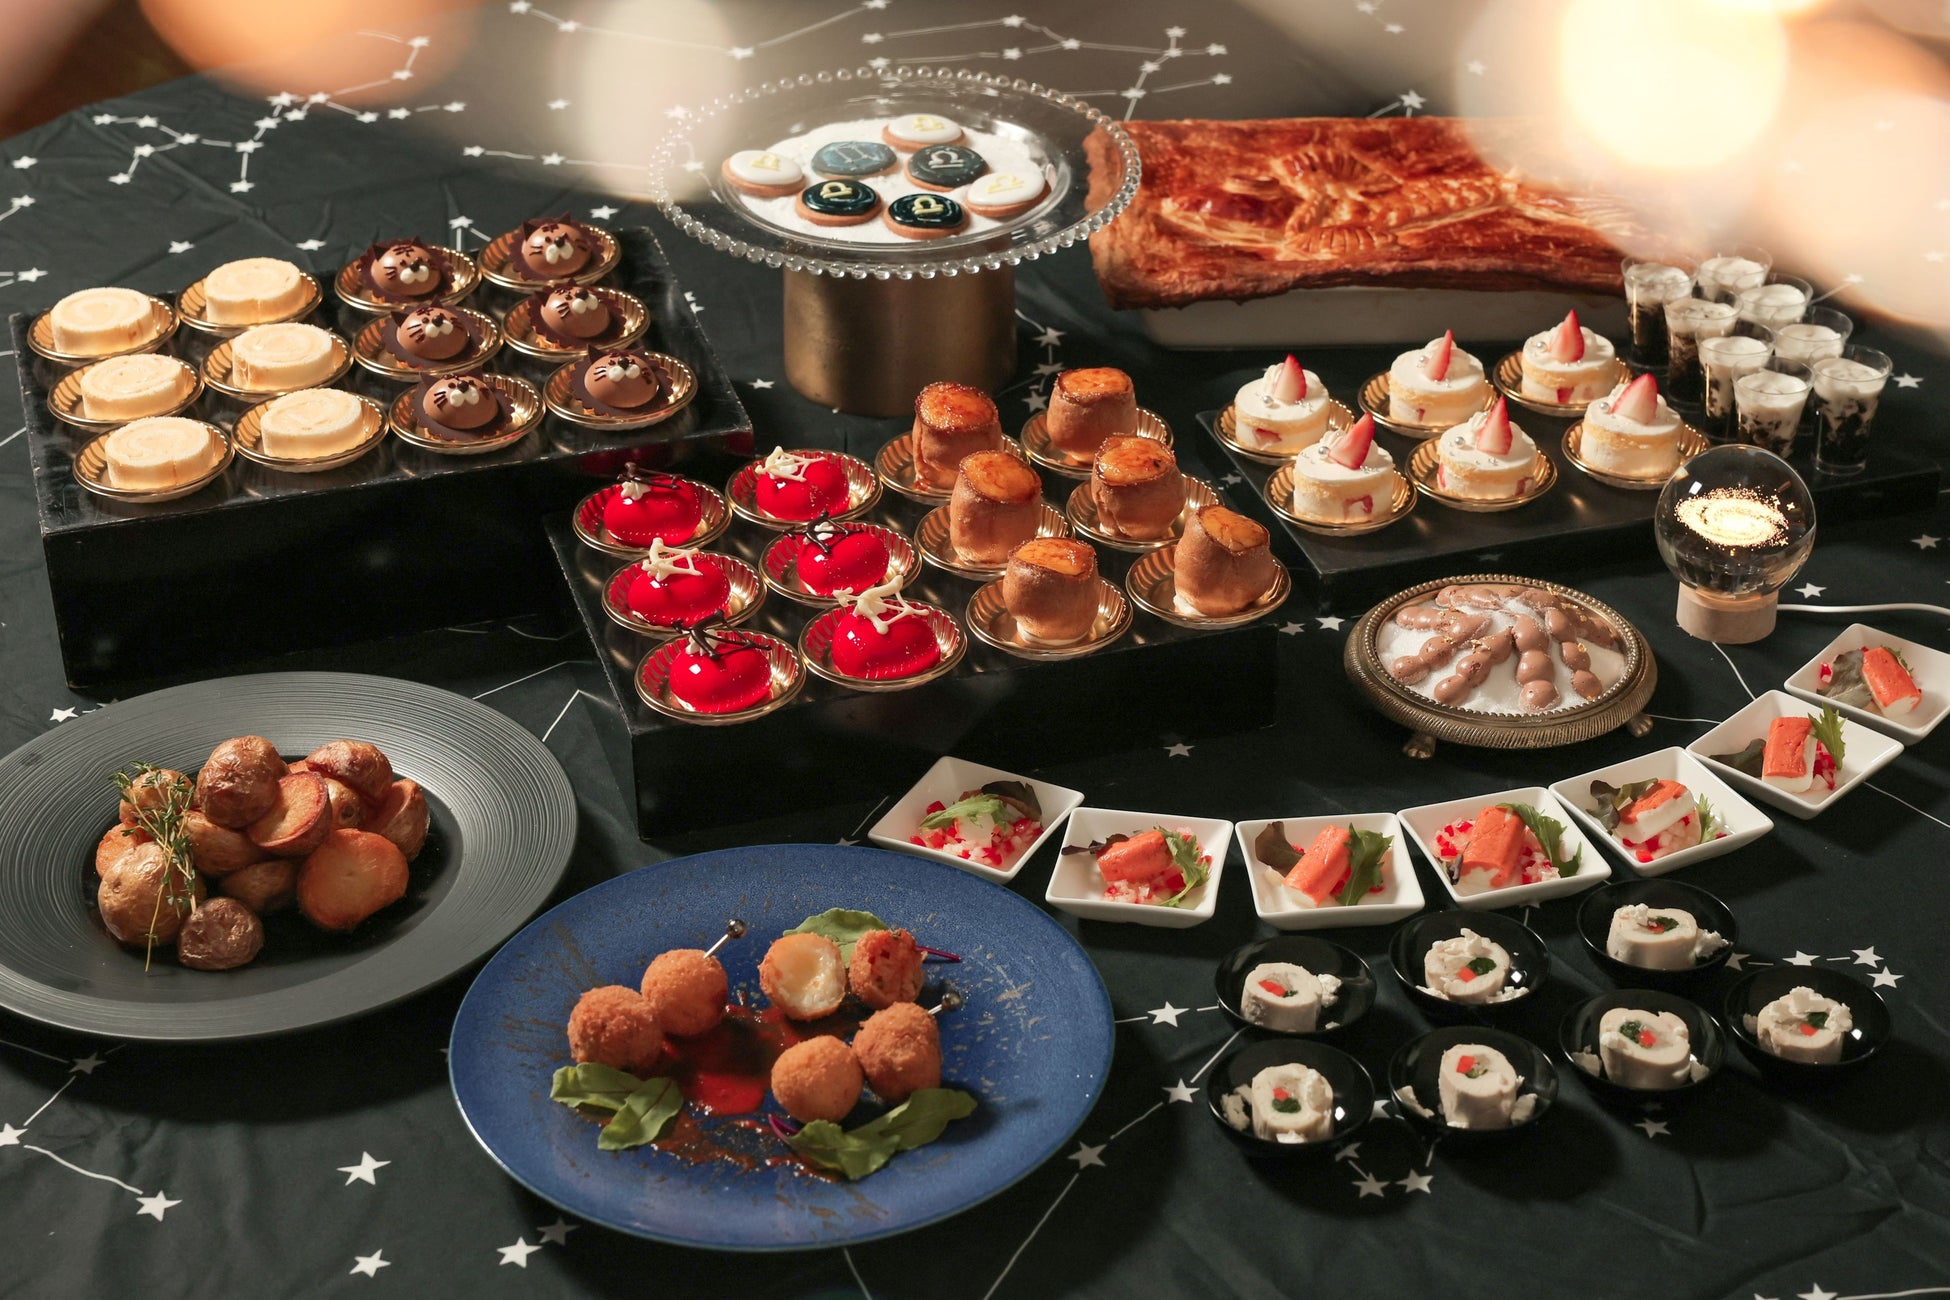 【仙台】輝く“星”をテーマにしたクリスマスブッフェを開催！十二星座をイメージしたデザートや料理 20種類以上が食べ放題『星降るクリスマスブッフェ』